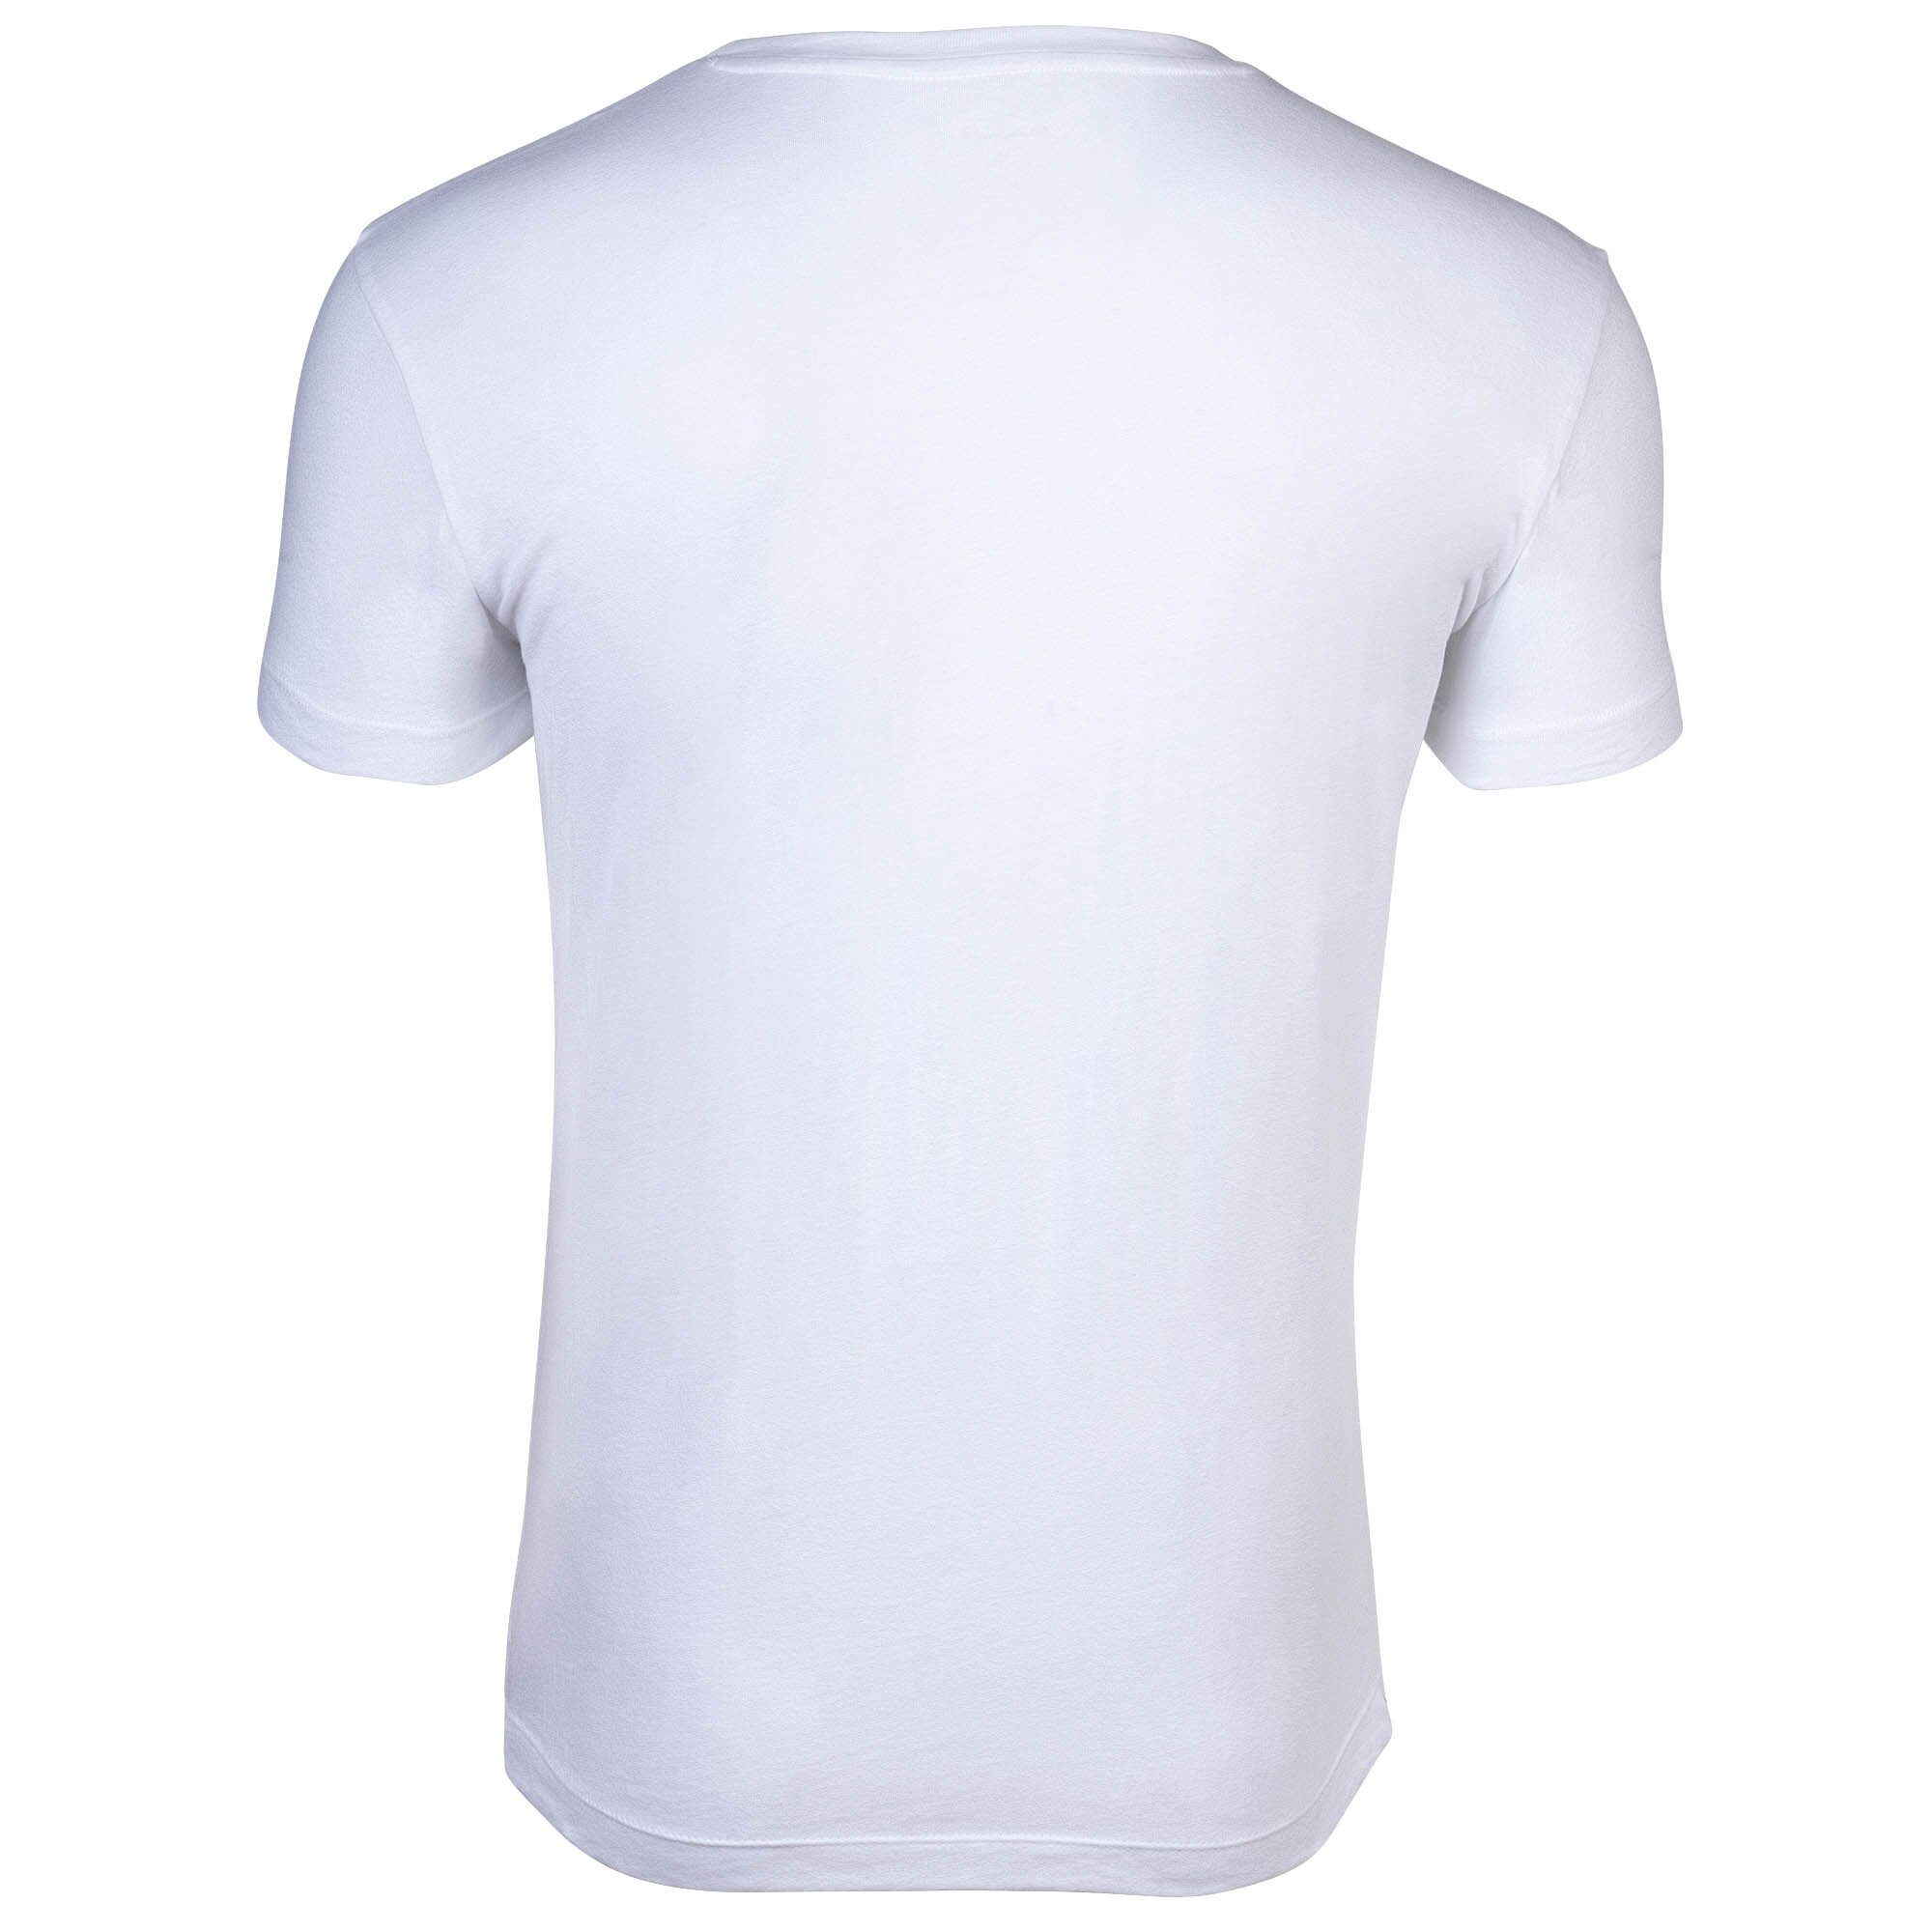 Rundhals, Neck Gant Pack Grau/Weiß - Herren 2er T-Shirt Crew T-Shirt,